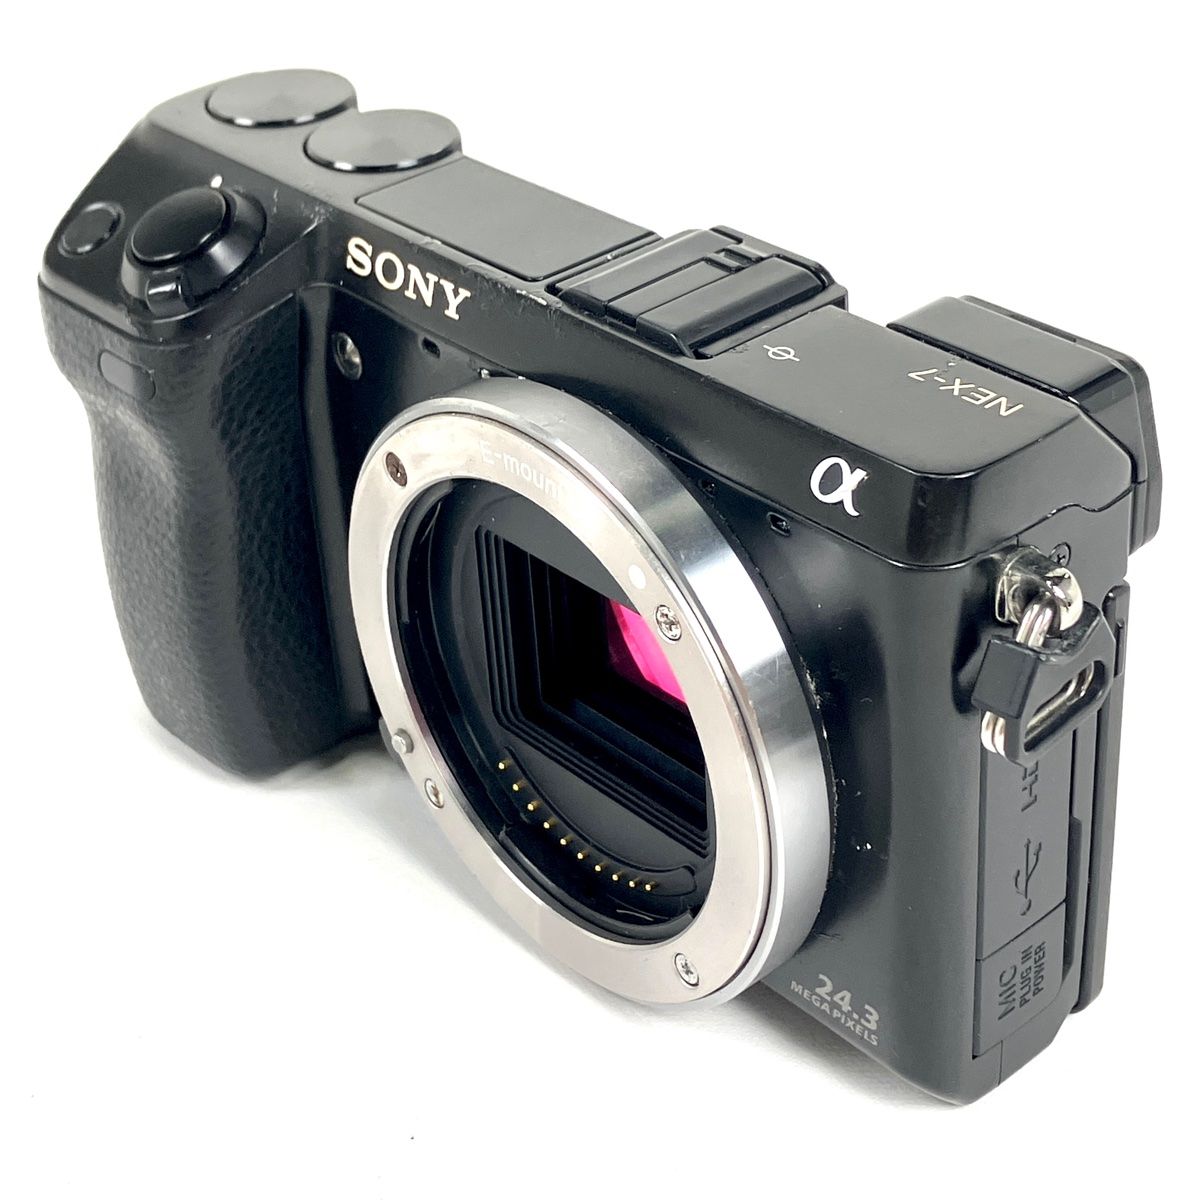 デジタル一眼カメラ Sony NEX-7. ボディご理解いただける方のみ